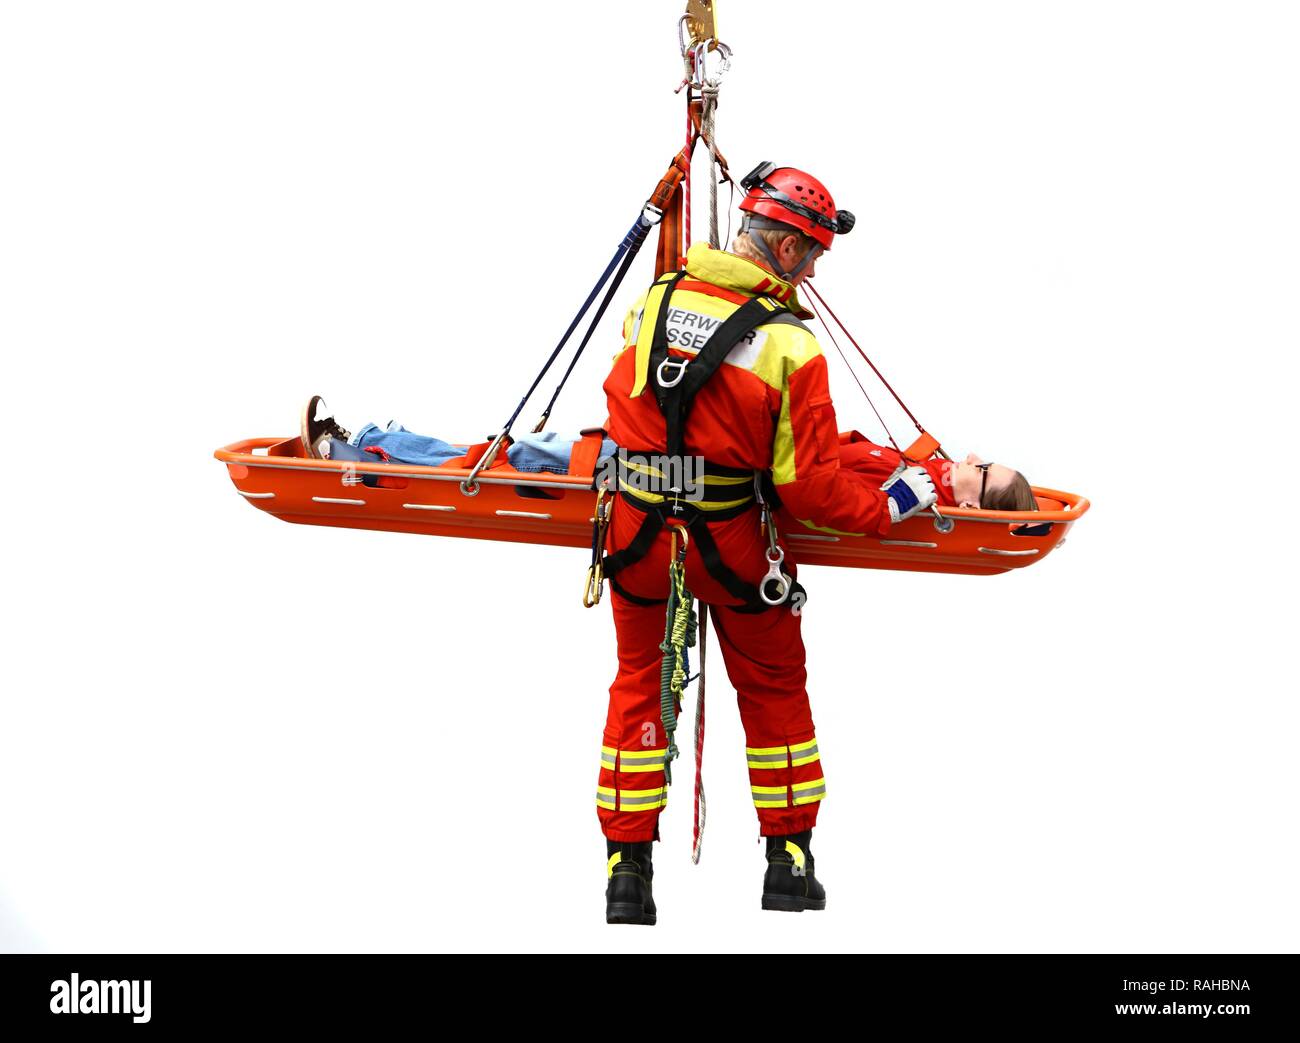 Hoher winkel Retter abseilen, während die Rettung einer Person in einer Rettung Korb, einem professionellen Feuerwehrmann der Berufsfeuerwehr Stockfoto